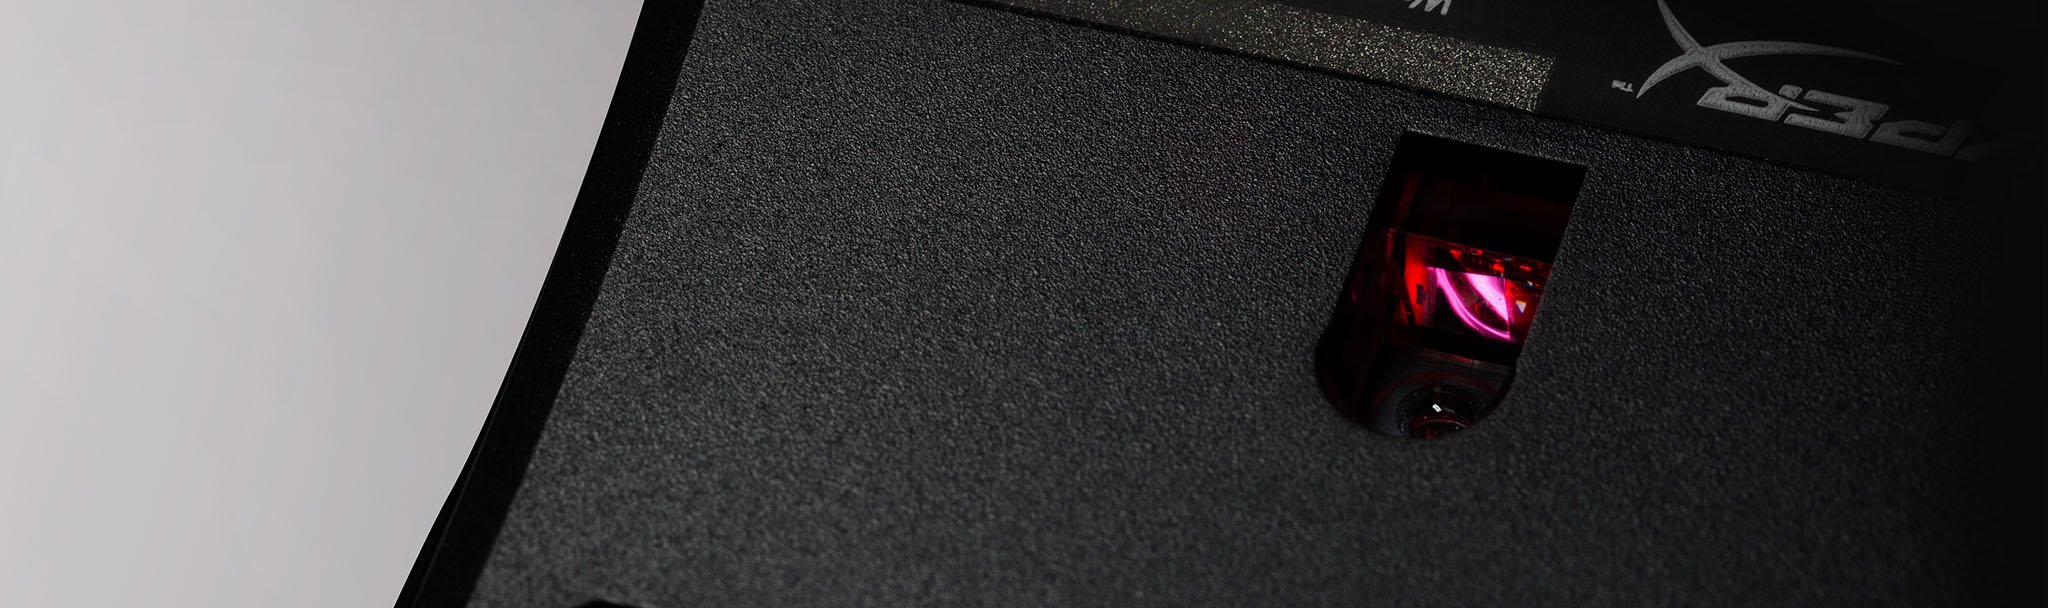 Chuột Kingston HyperX Pulsefire Surge RGB USB  trang bị mắt cảm biến cao cấp